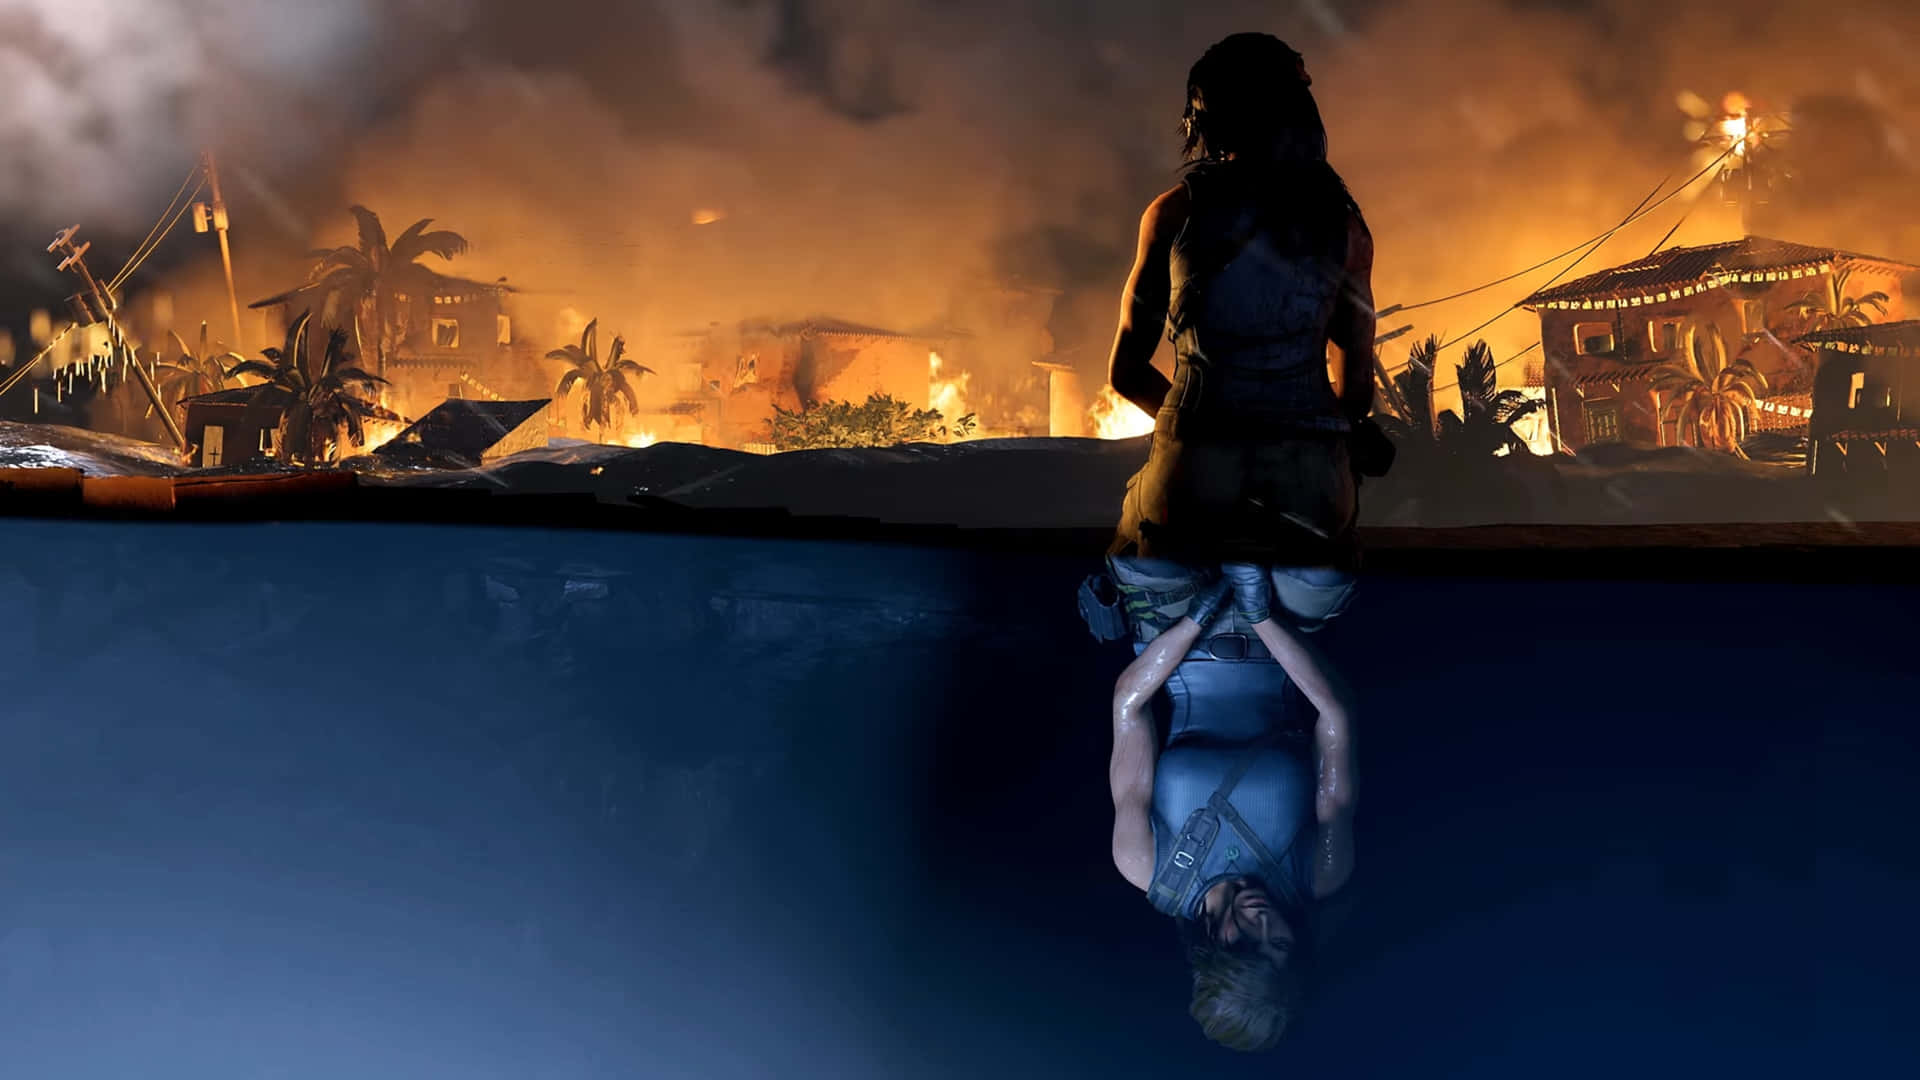 Imagenen Espejo De Lara Croft En 4k, Fondo De Shadow Of The Tomb Raider